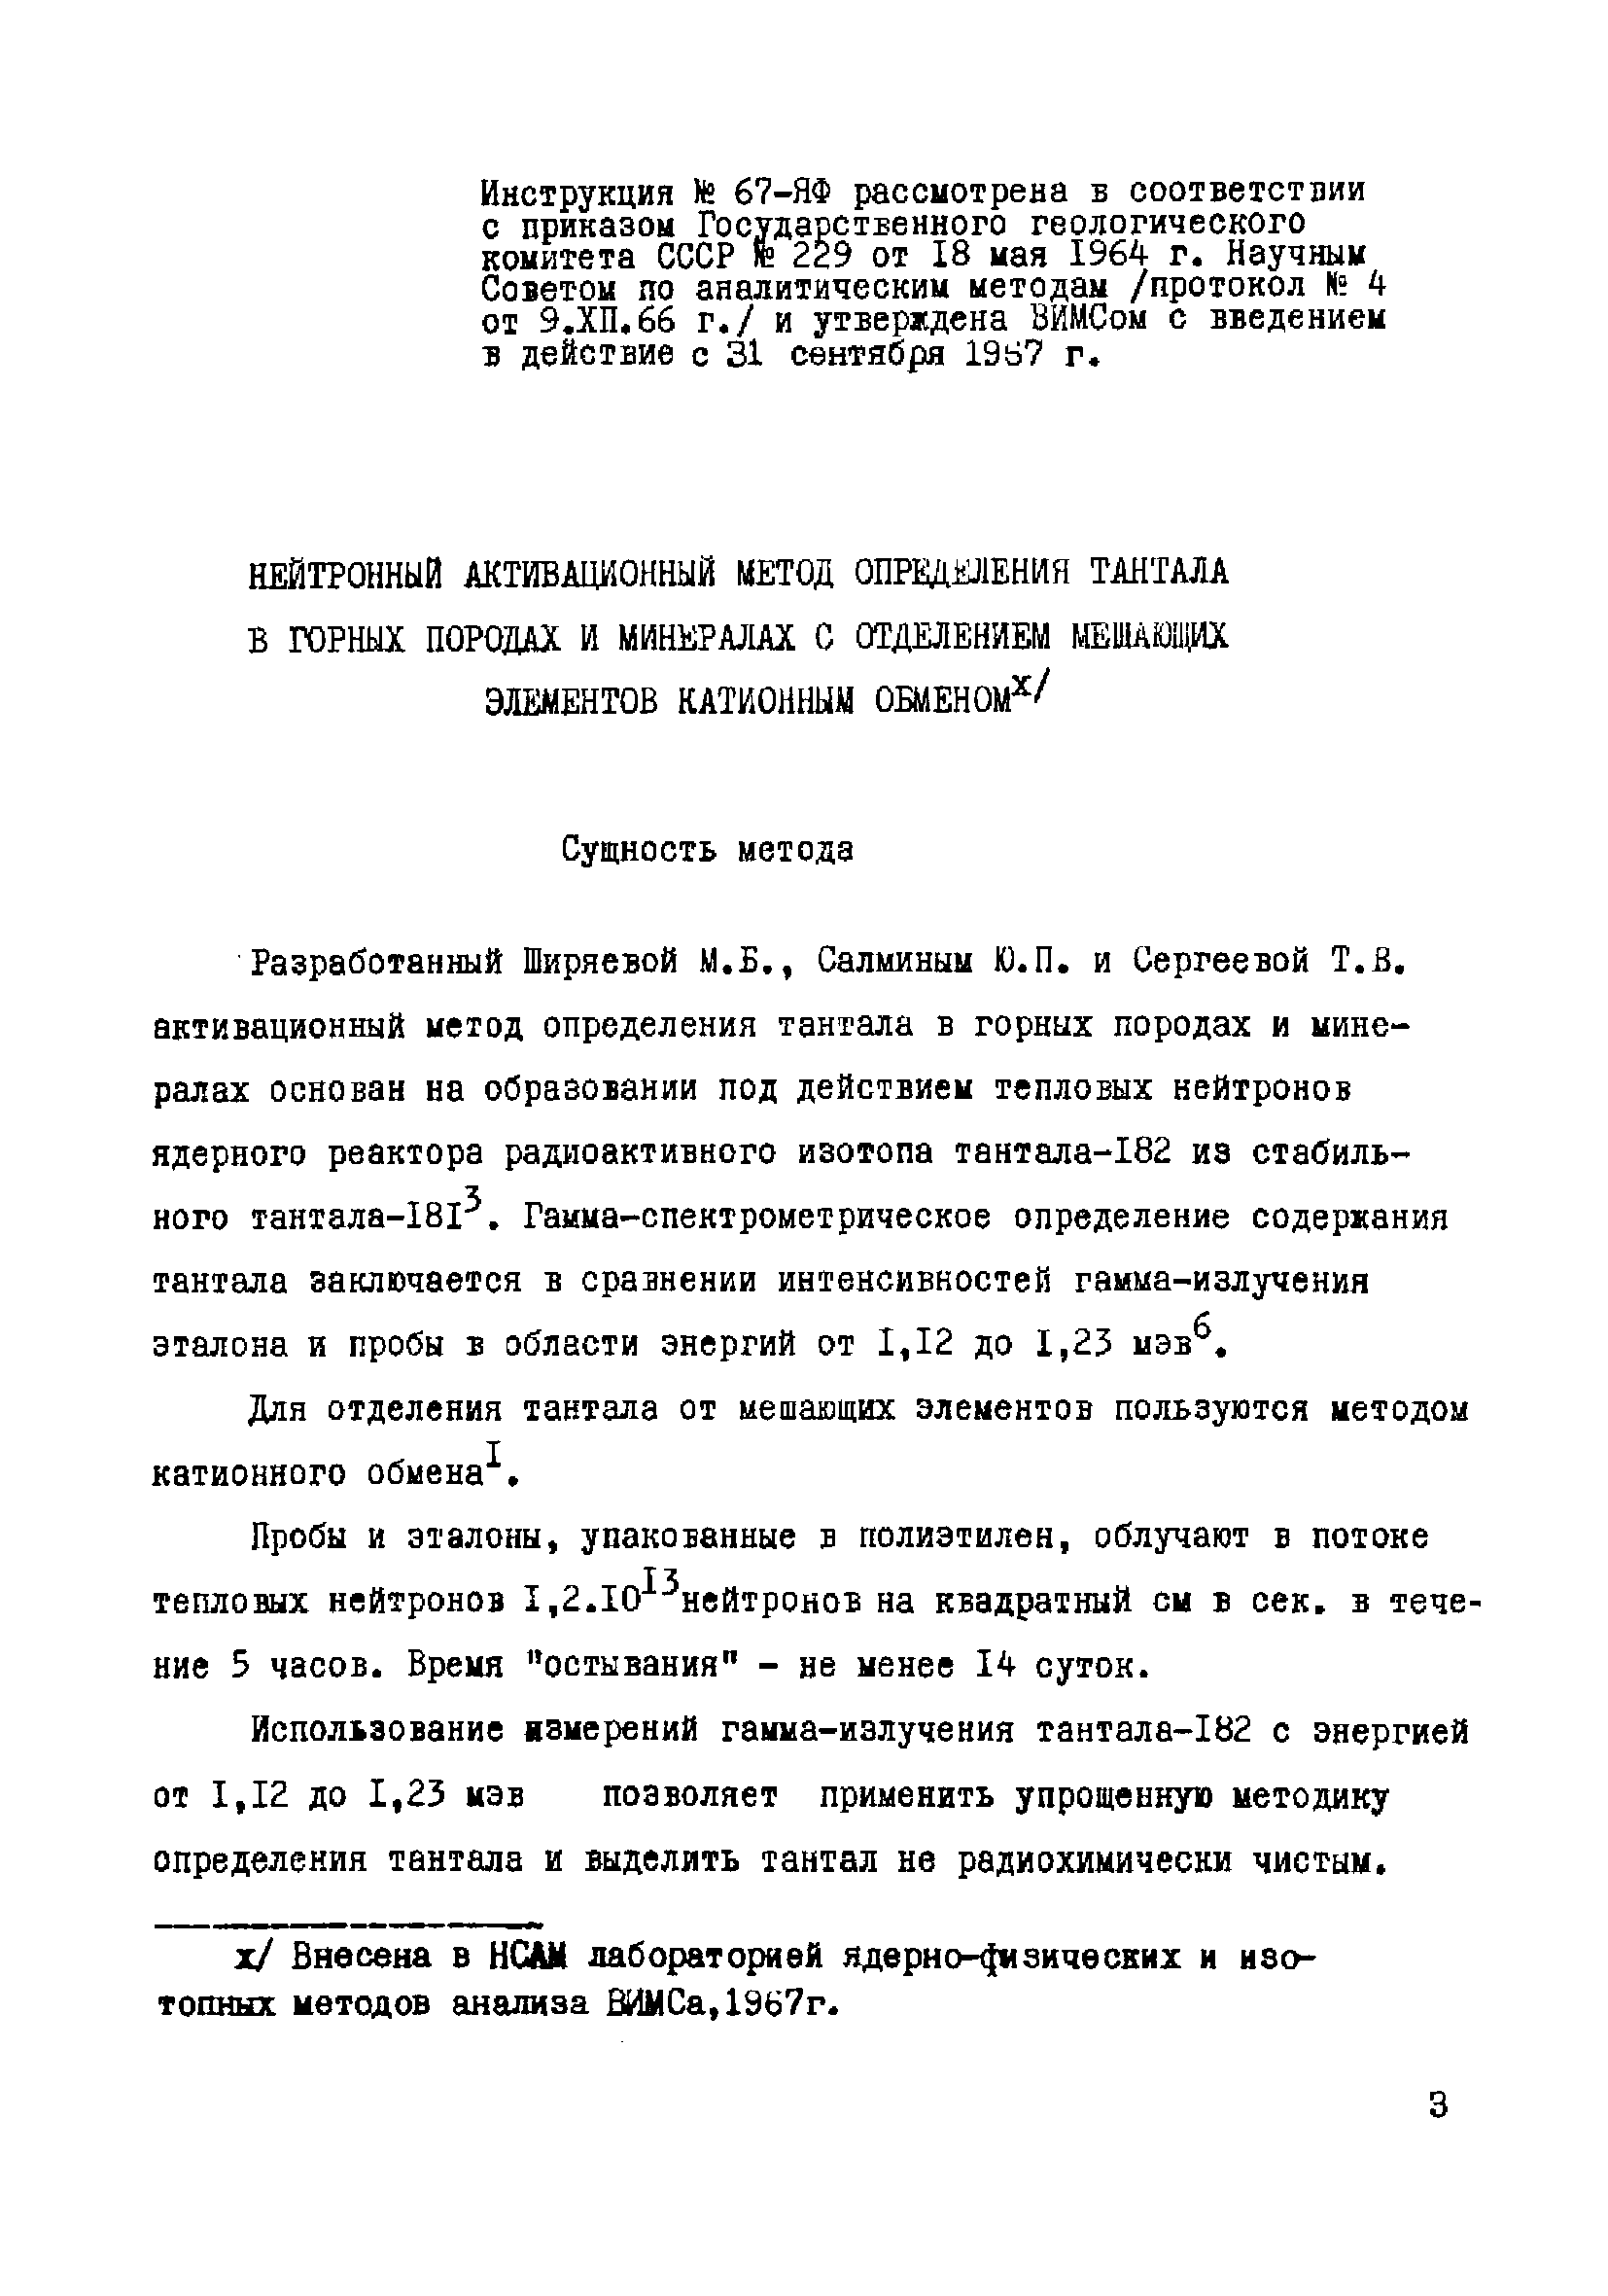 Инструкция НСАМ 67-ЯФ